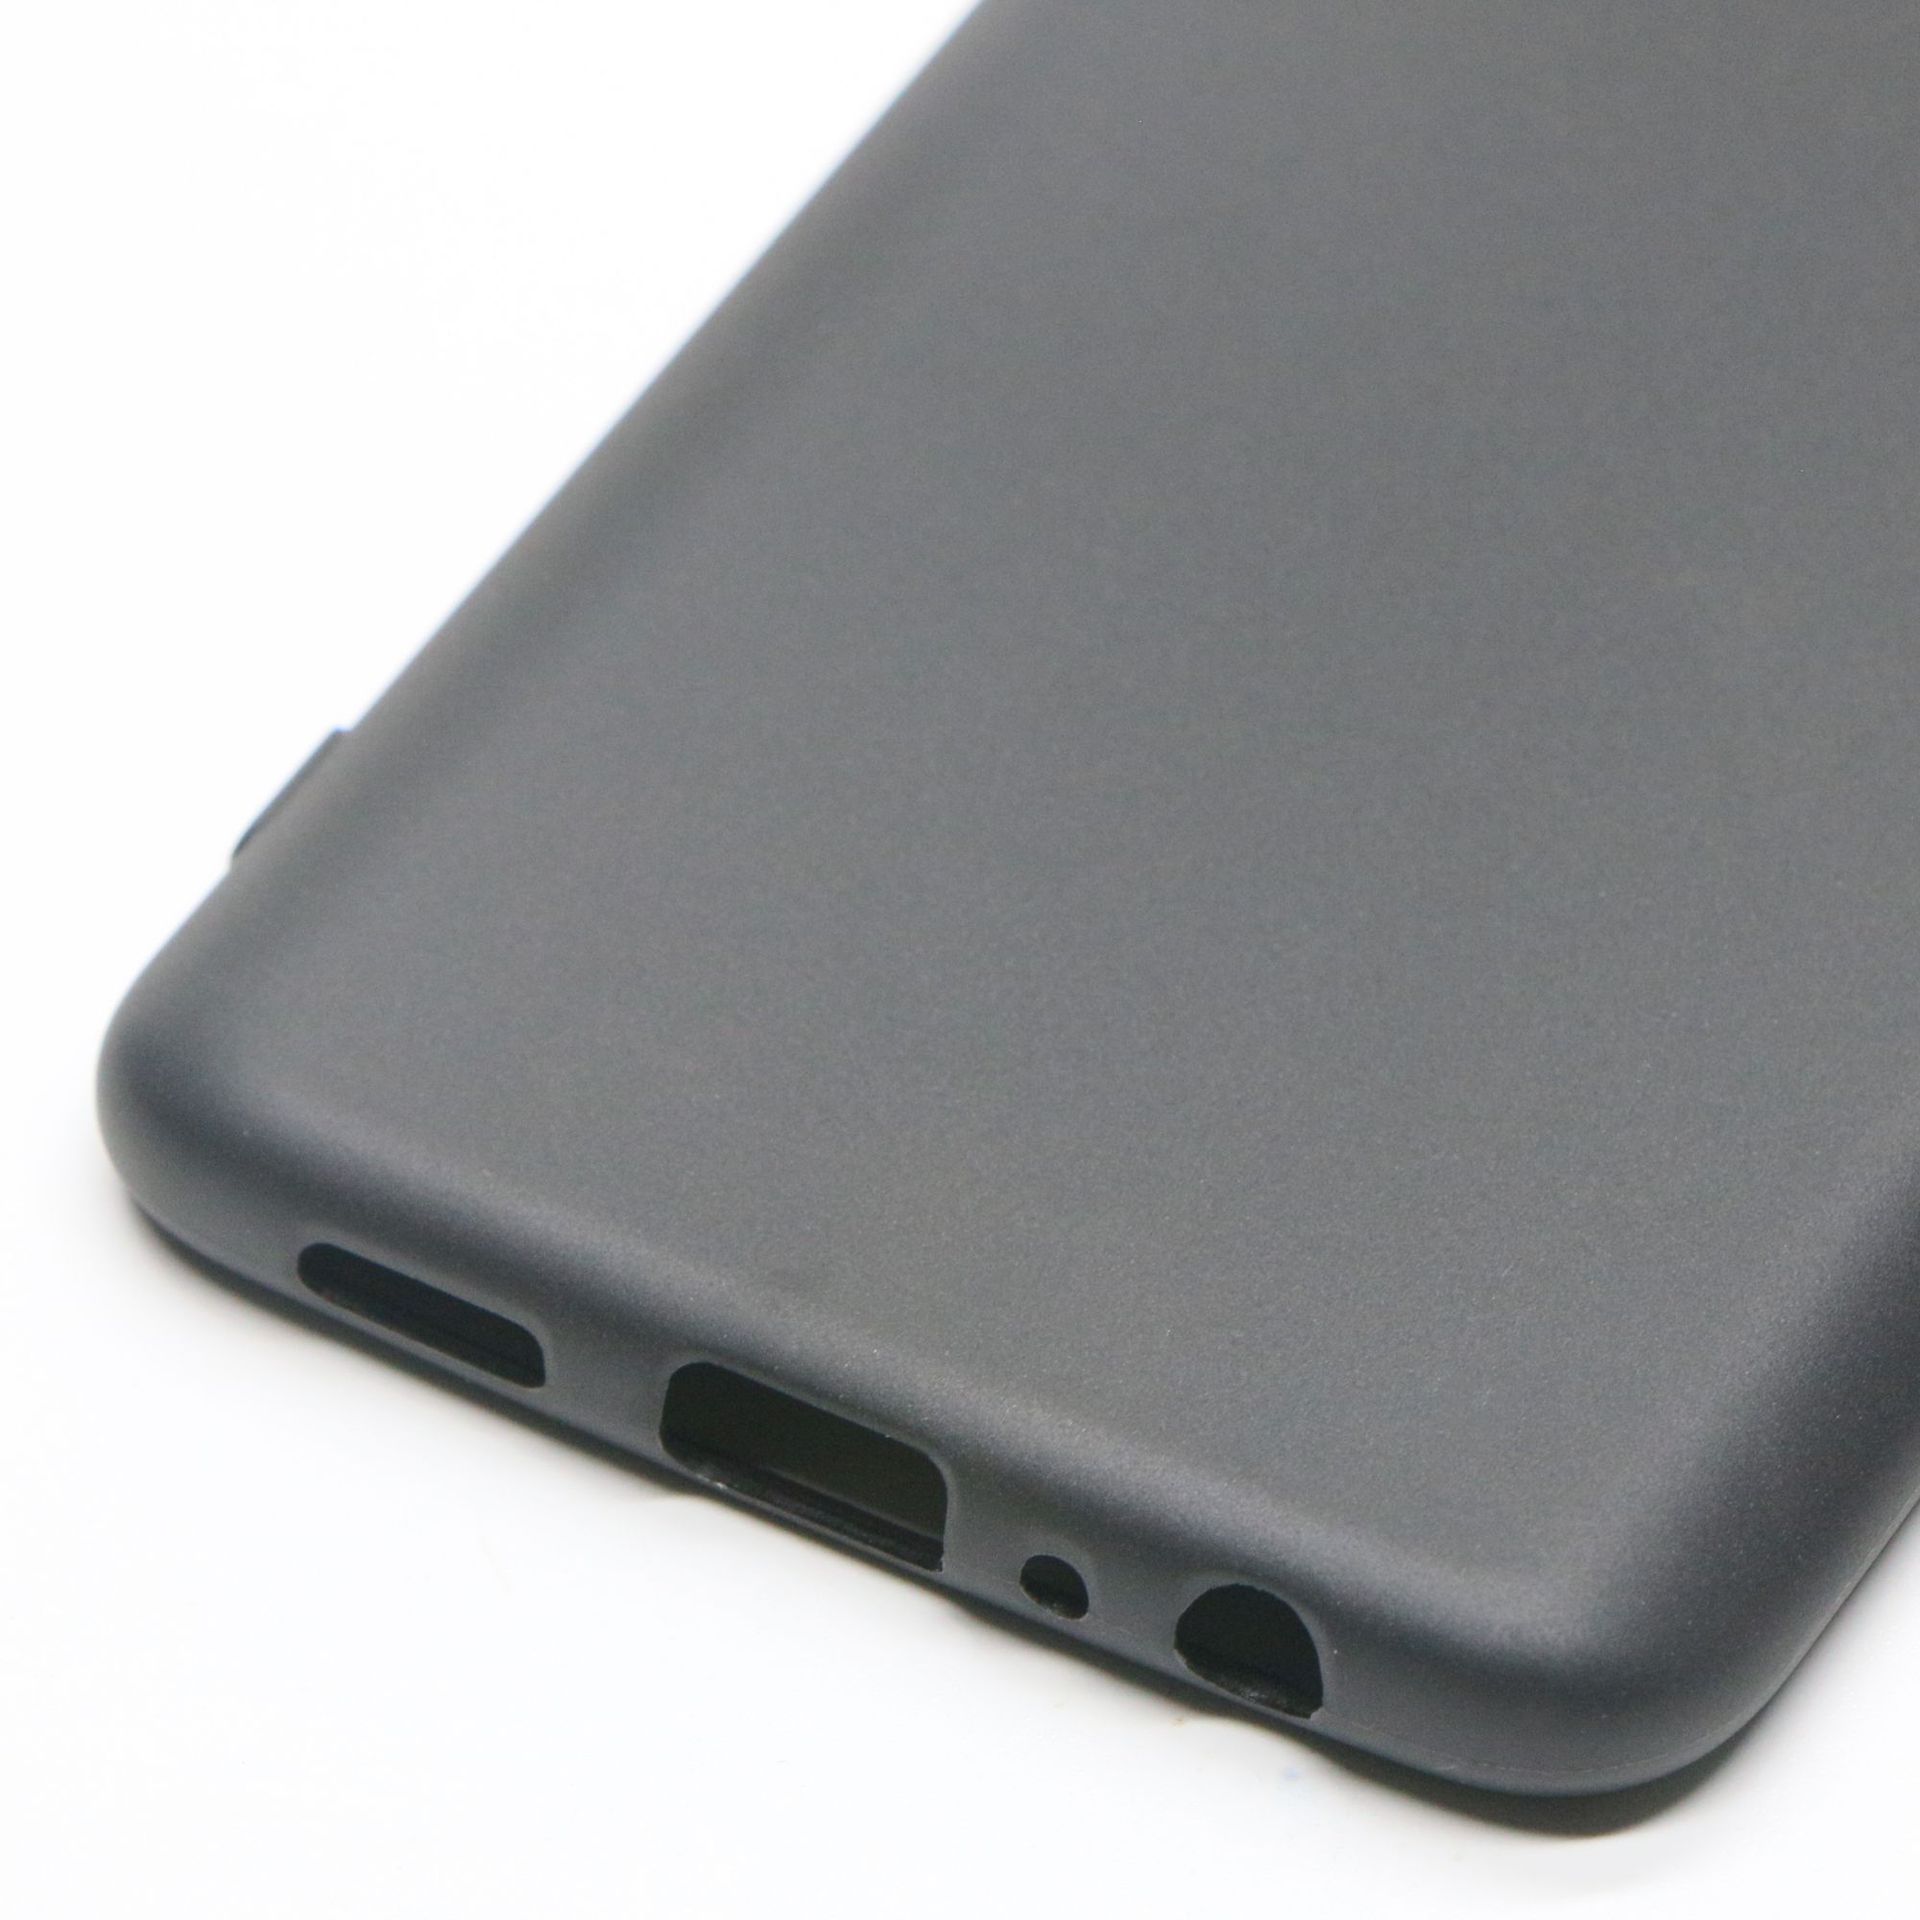 Ốp lưng cho OPPO Reno4 4G chất liệu silicon dẻo màu đen chống sốc hàng cao cấp